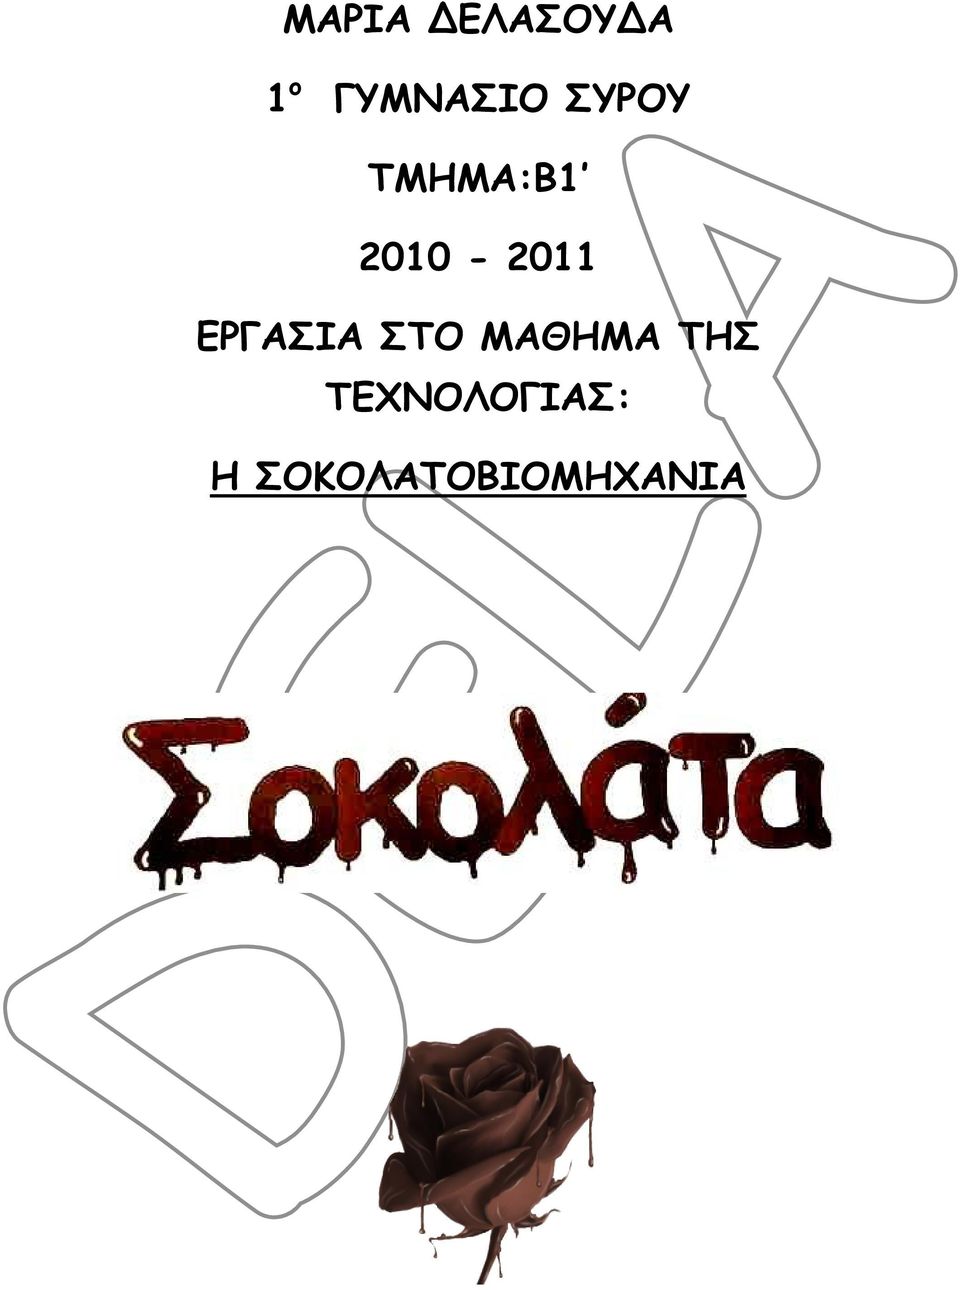 2010-2011 ΕΡΓΑΣΙΑ ΣΤΟ